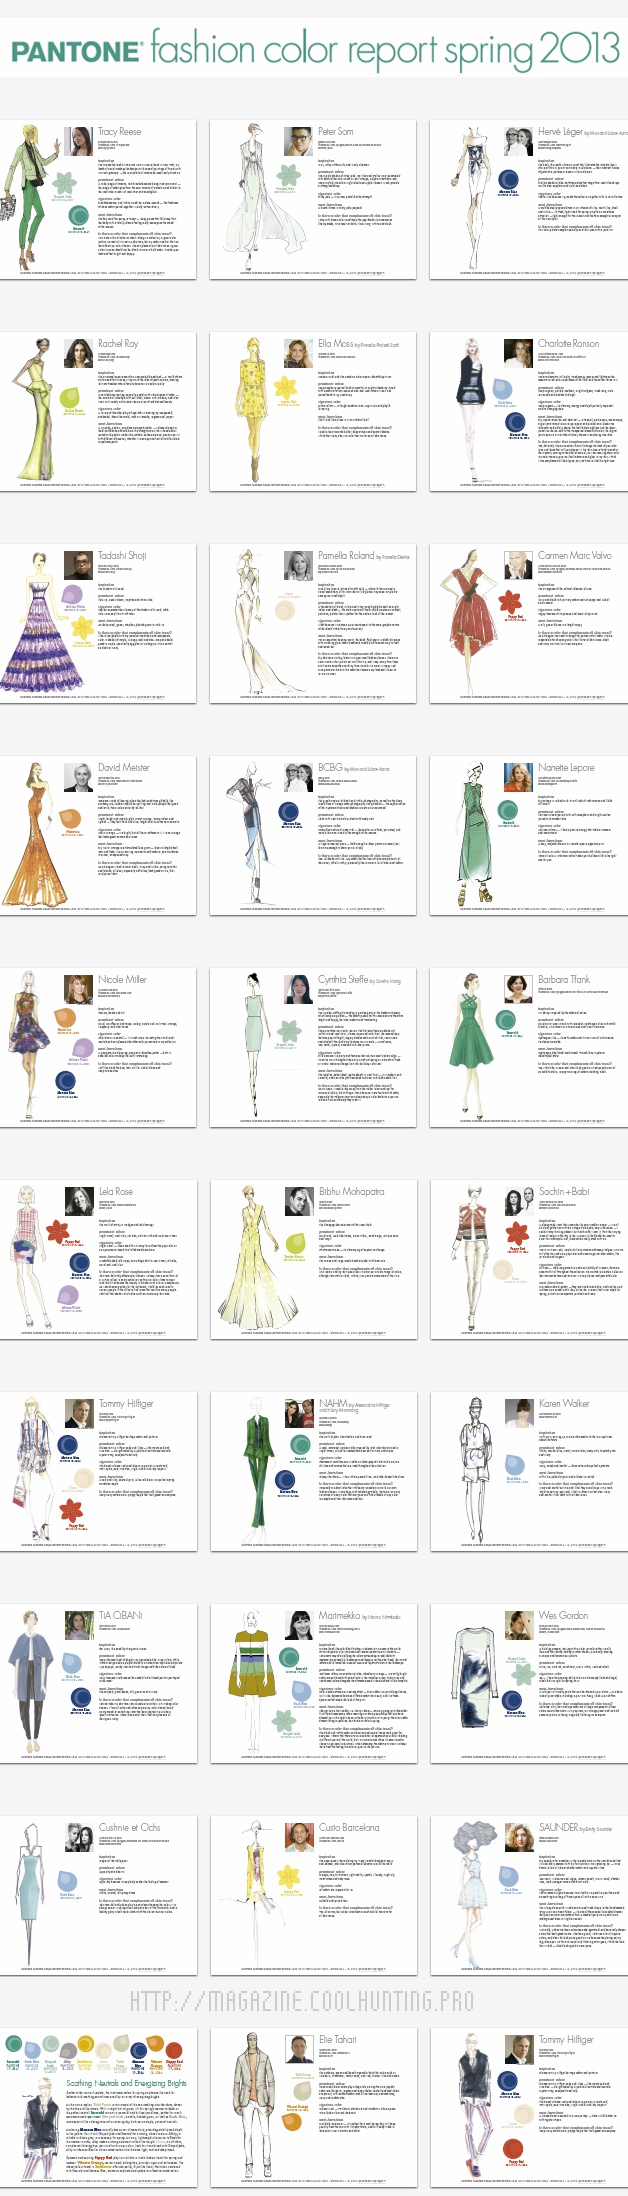 Figurines y diseños del reporte de tendencias color PANTONE 2013